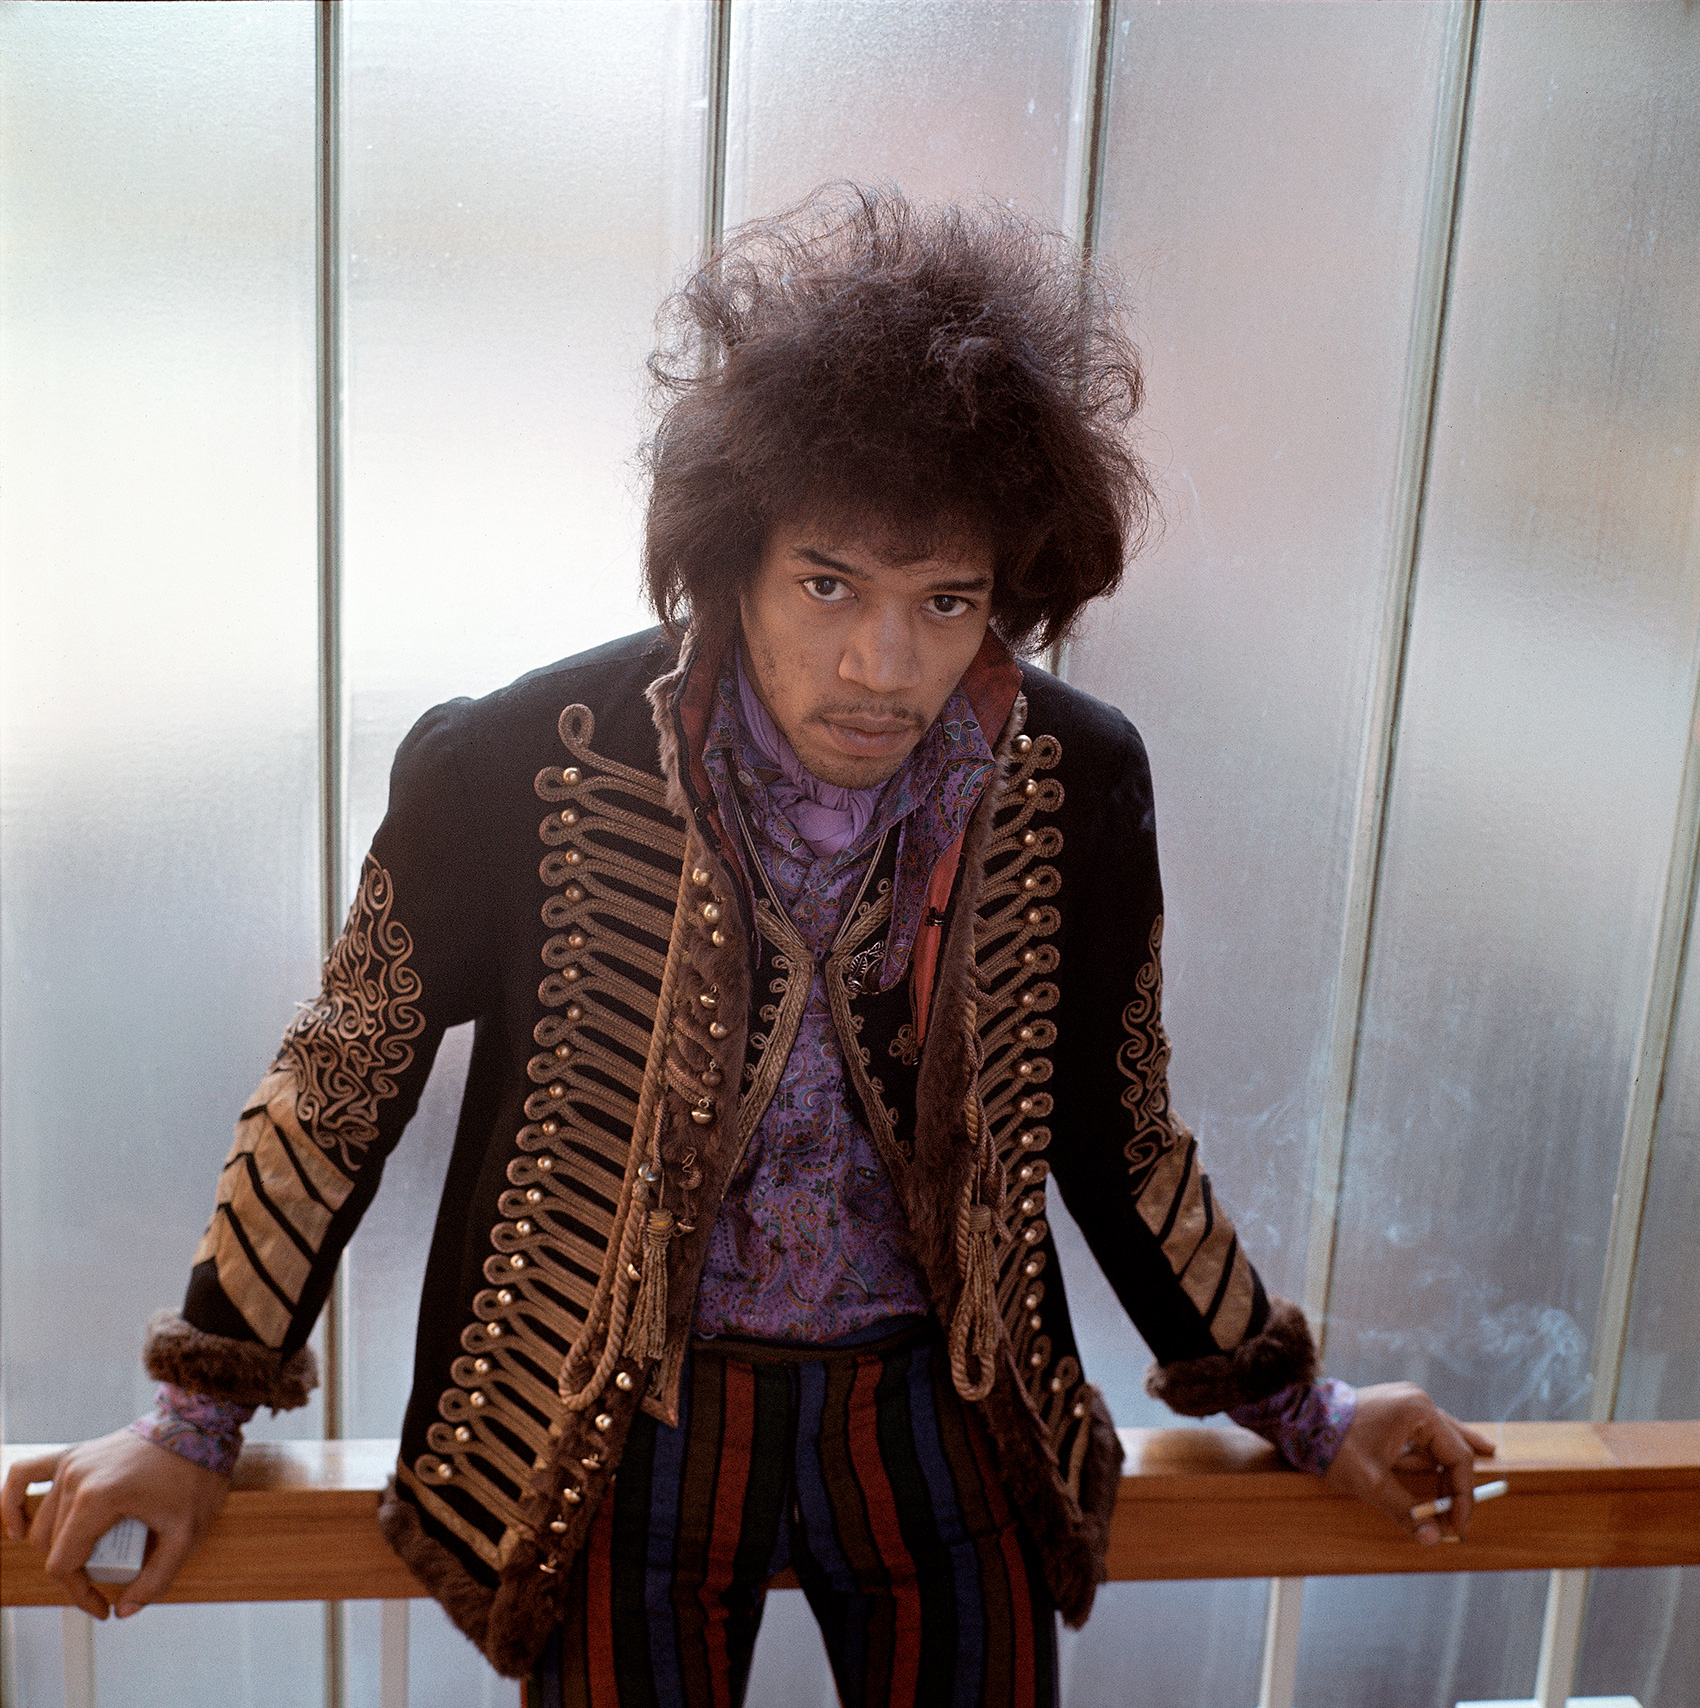 Jimi Hendrix: Still an Experience